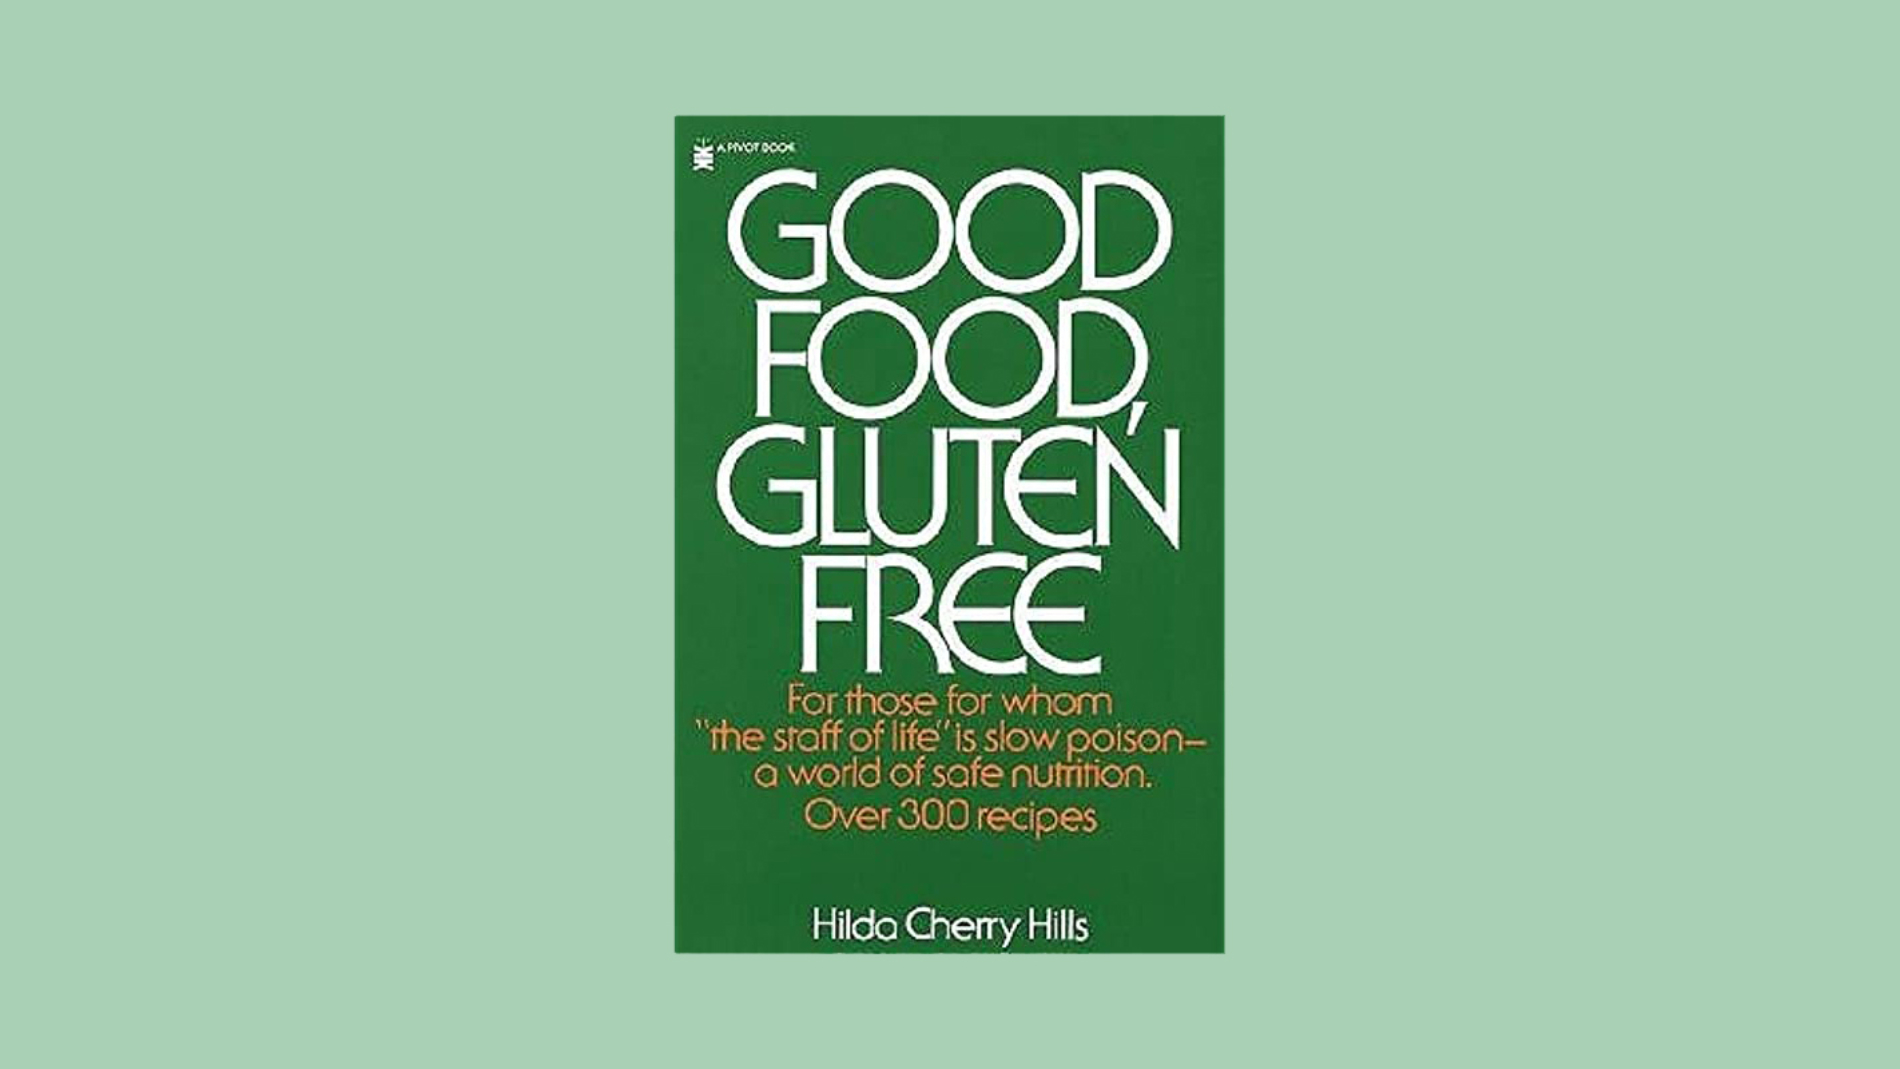 Good Food, Gluten Free by Hilda Cherry Hills